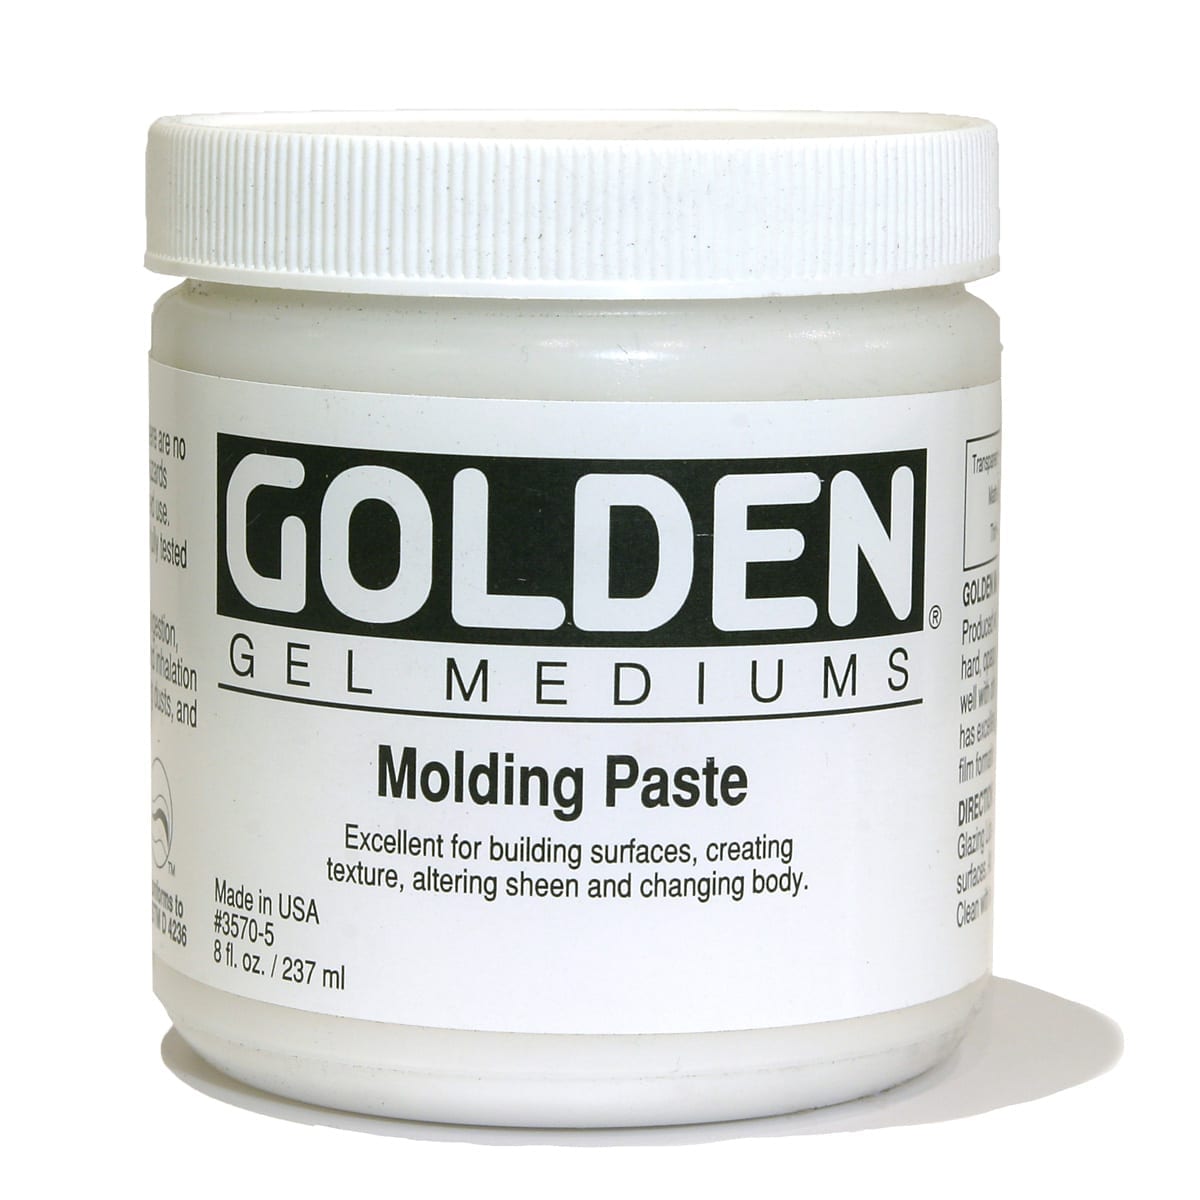 Golden Light Molding Paste